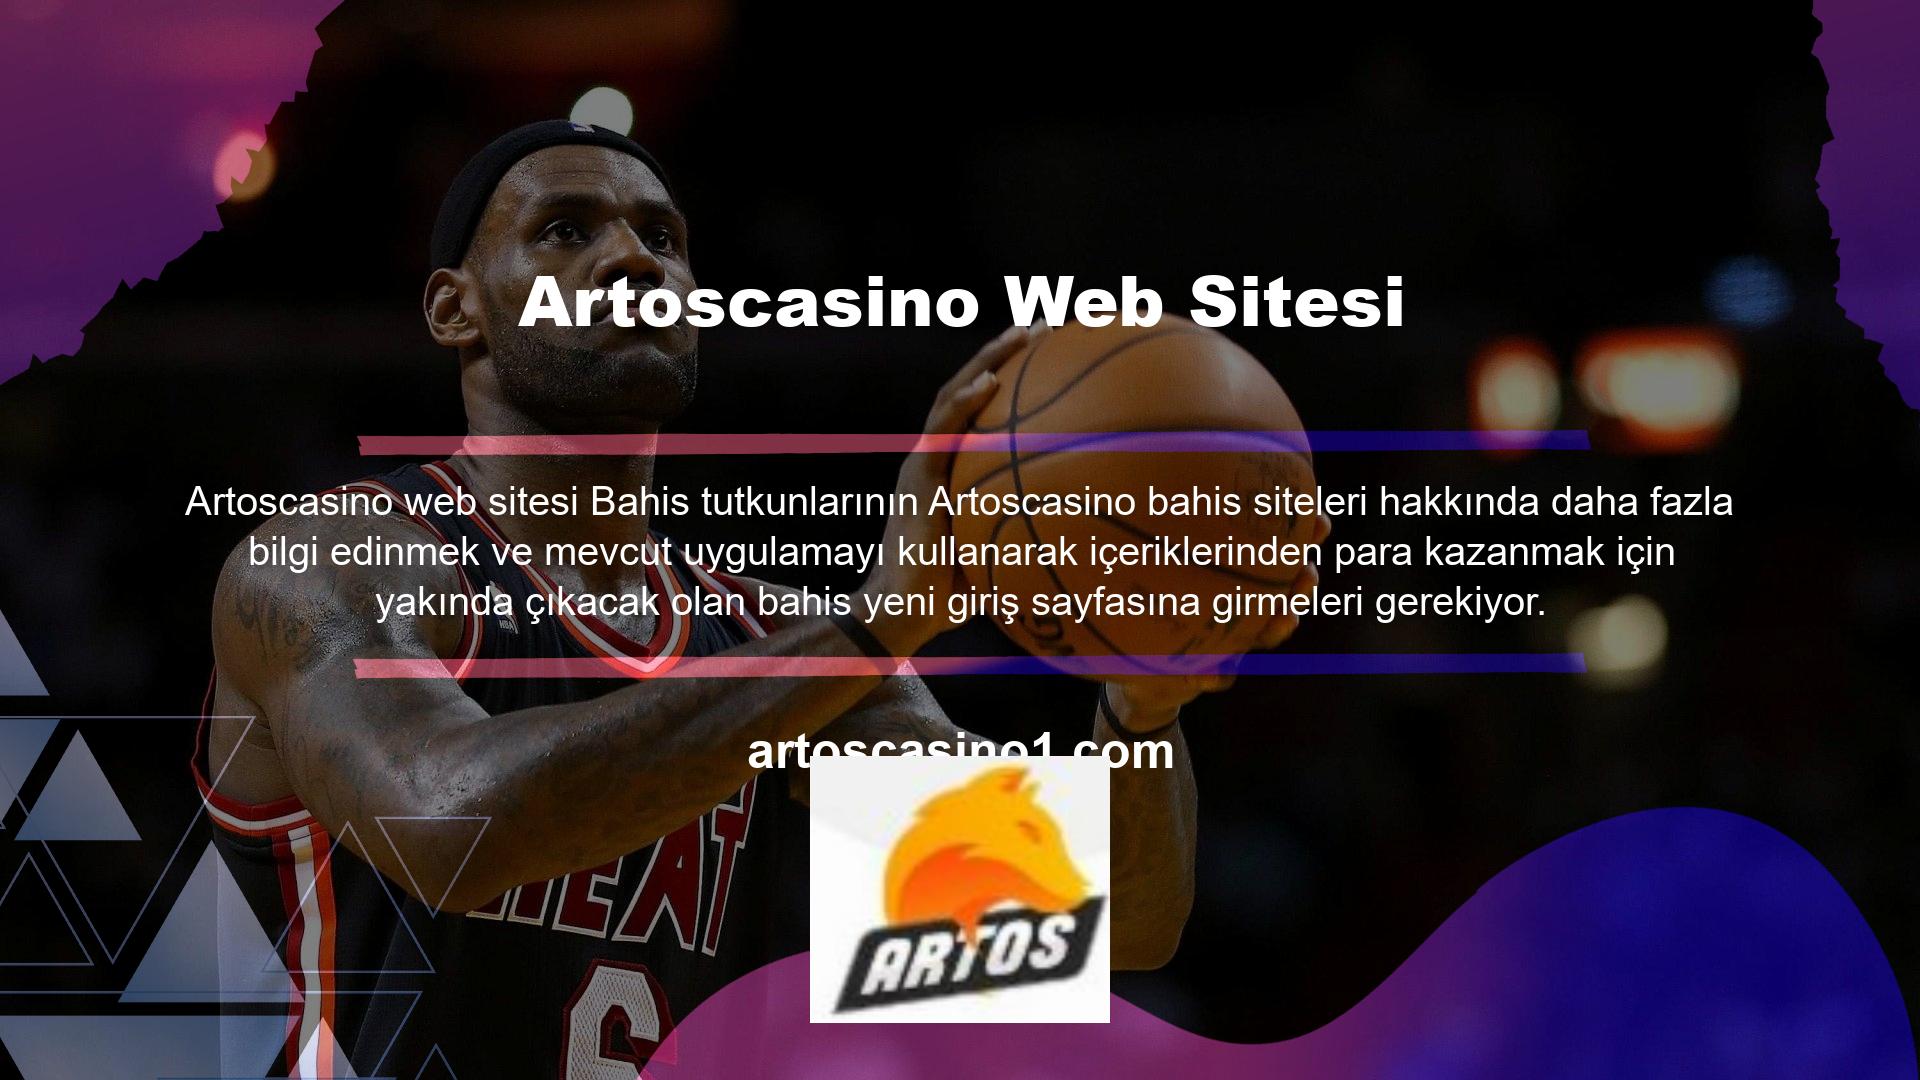 Artoscasino web sitesi, Türkçe seçenekleriyle çevrimiçi bahis uygulaması sunmaktadır